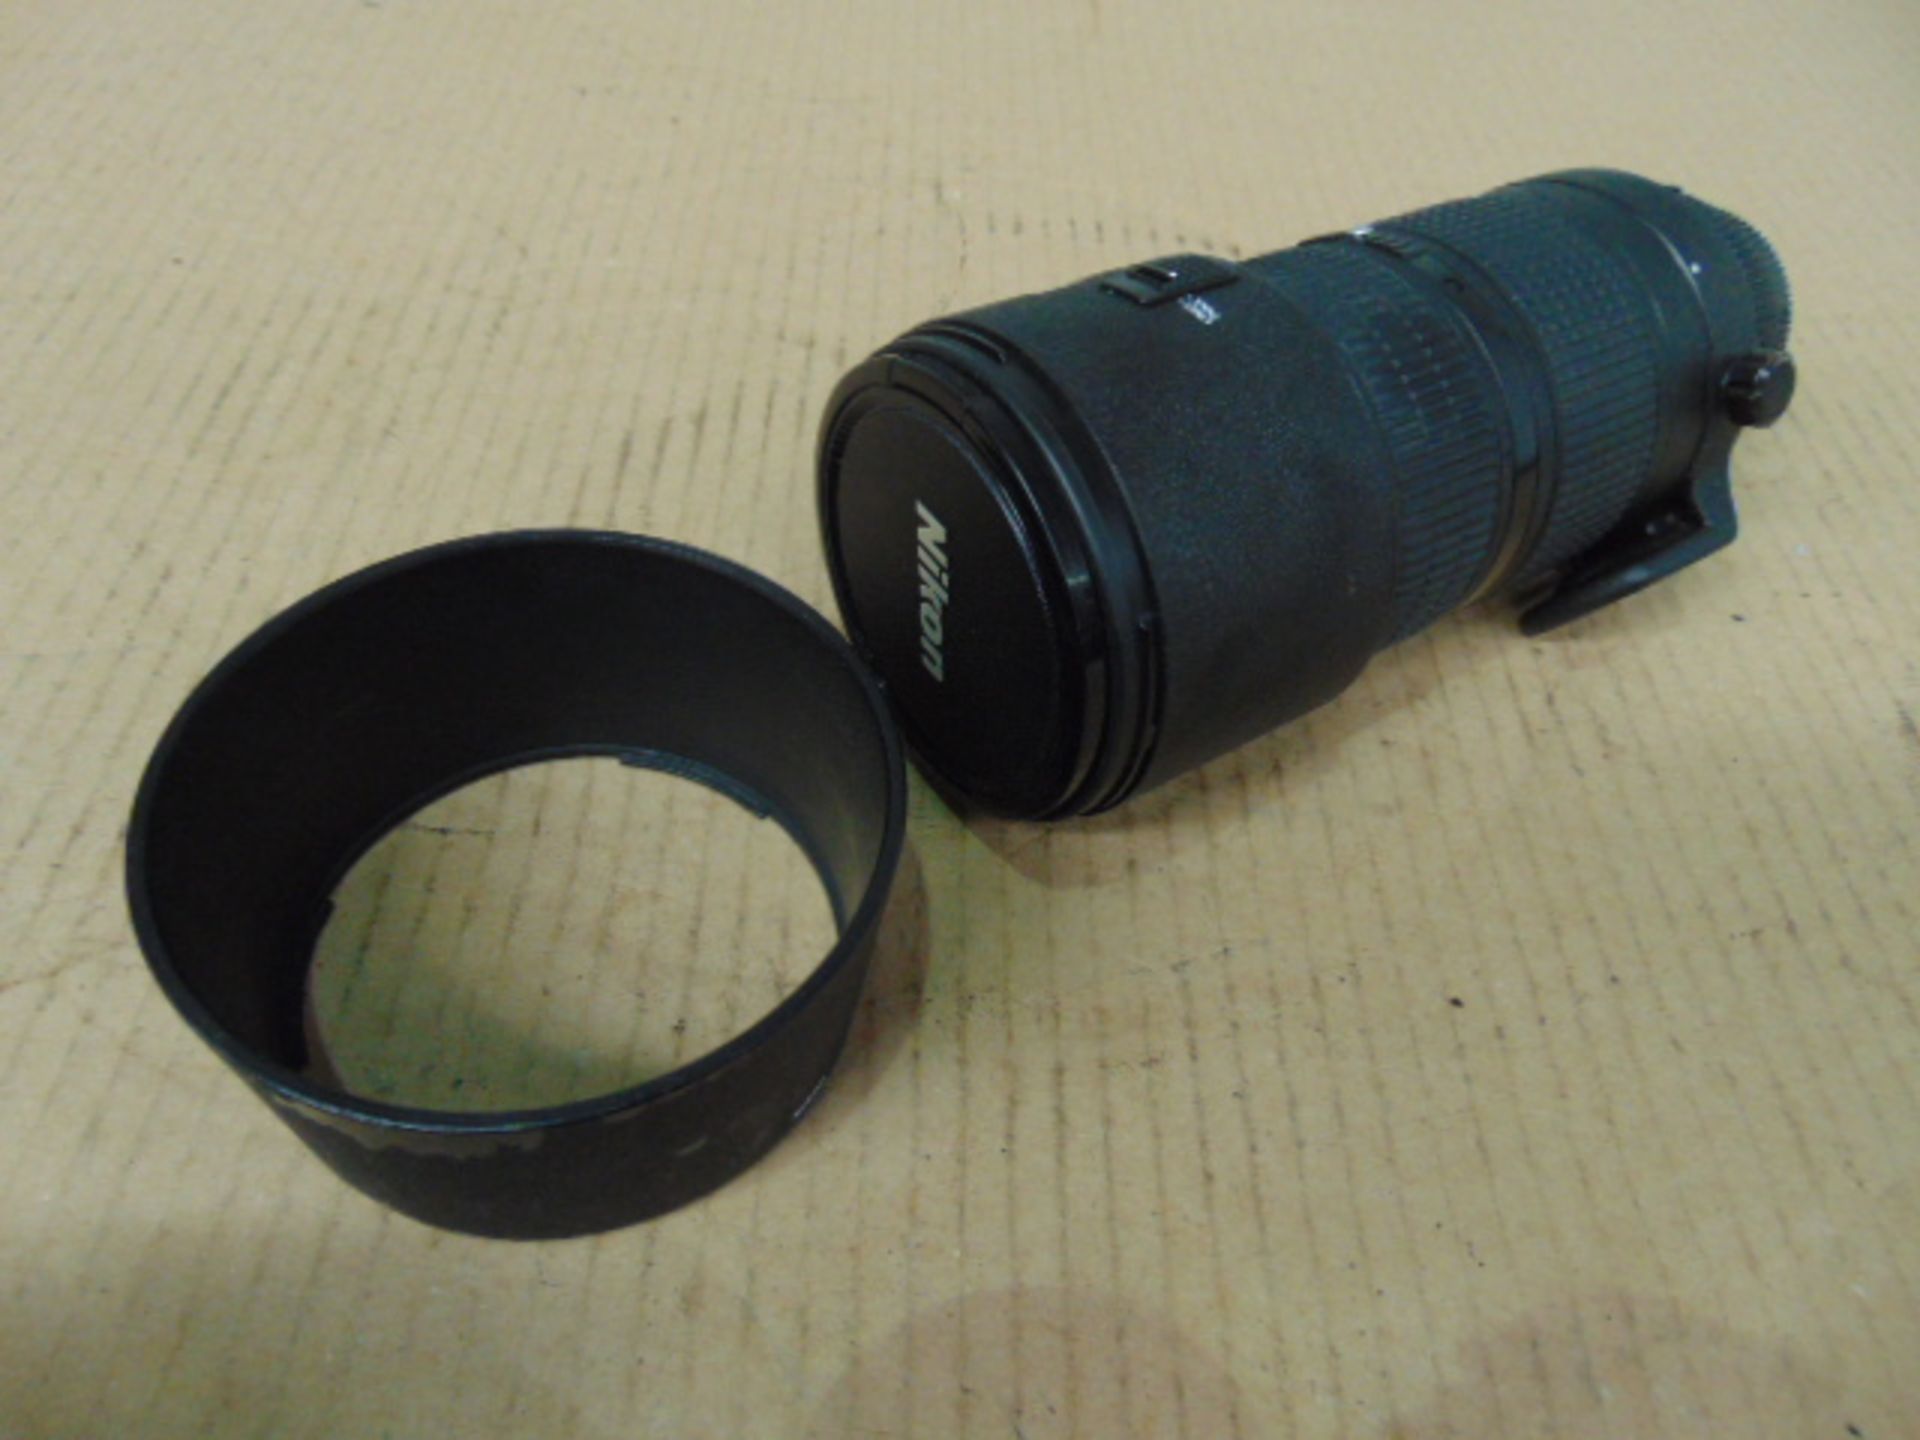 Nikon ED AF Nikkor 80-200mm 1:2.8 D Lense with Leather Carry Case - Image 8 of 11